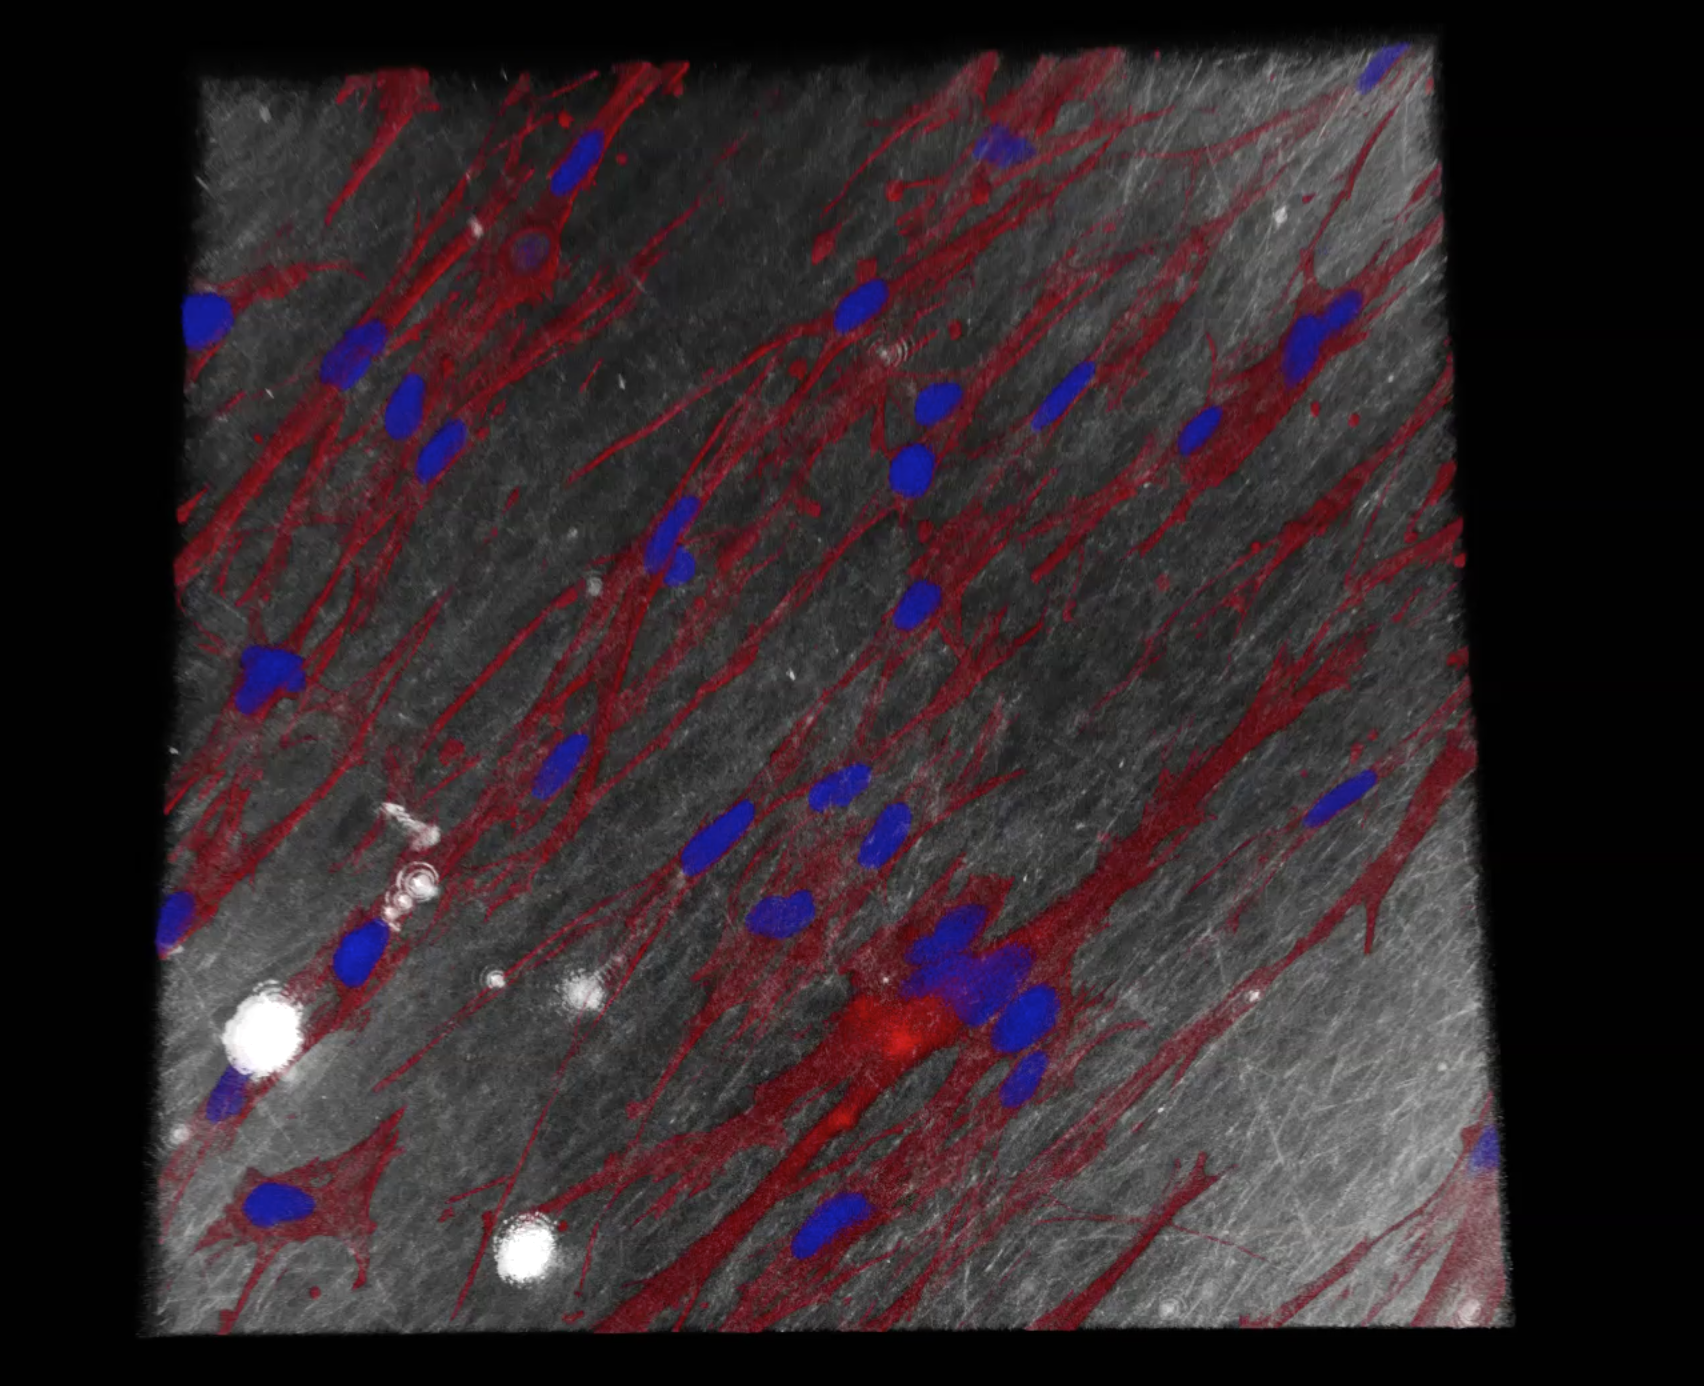 Fibroblasten (Bindegewebszellen) auf der elektroversponnenen Renacer®-Membran unter dem Konfokalmikroskop (rot: Zytoskelett der Zellen, blau: Zellkerne) 